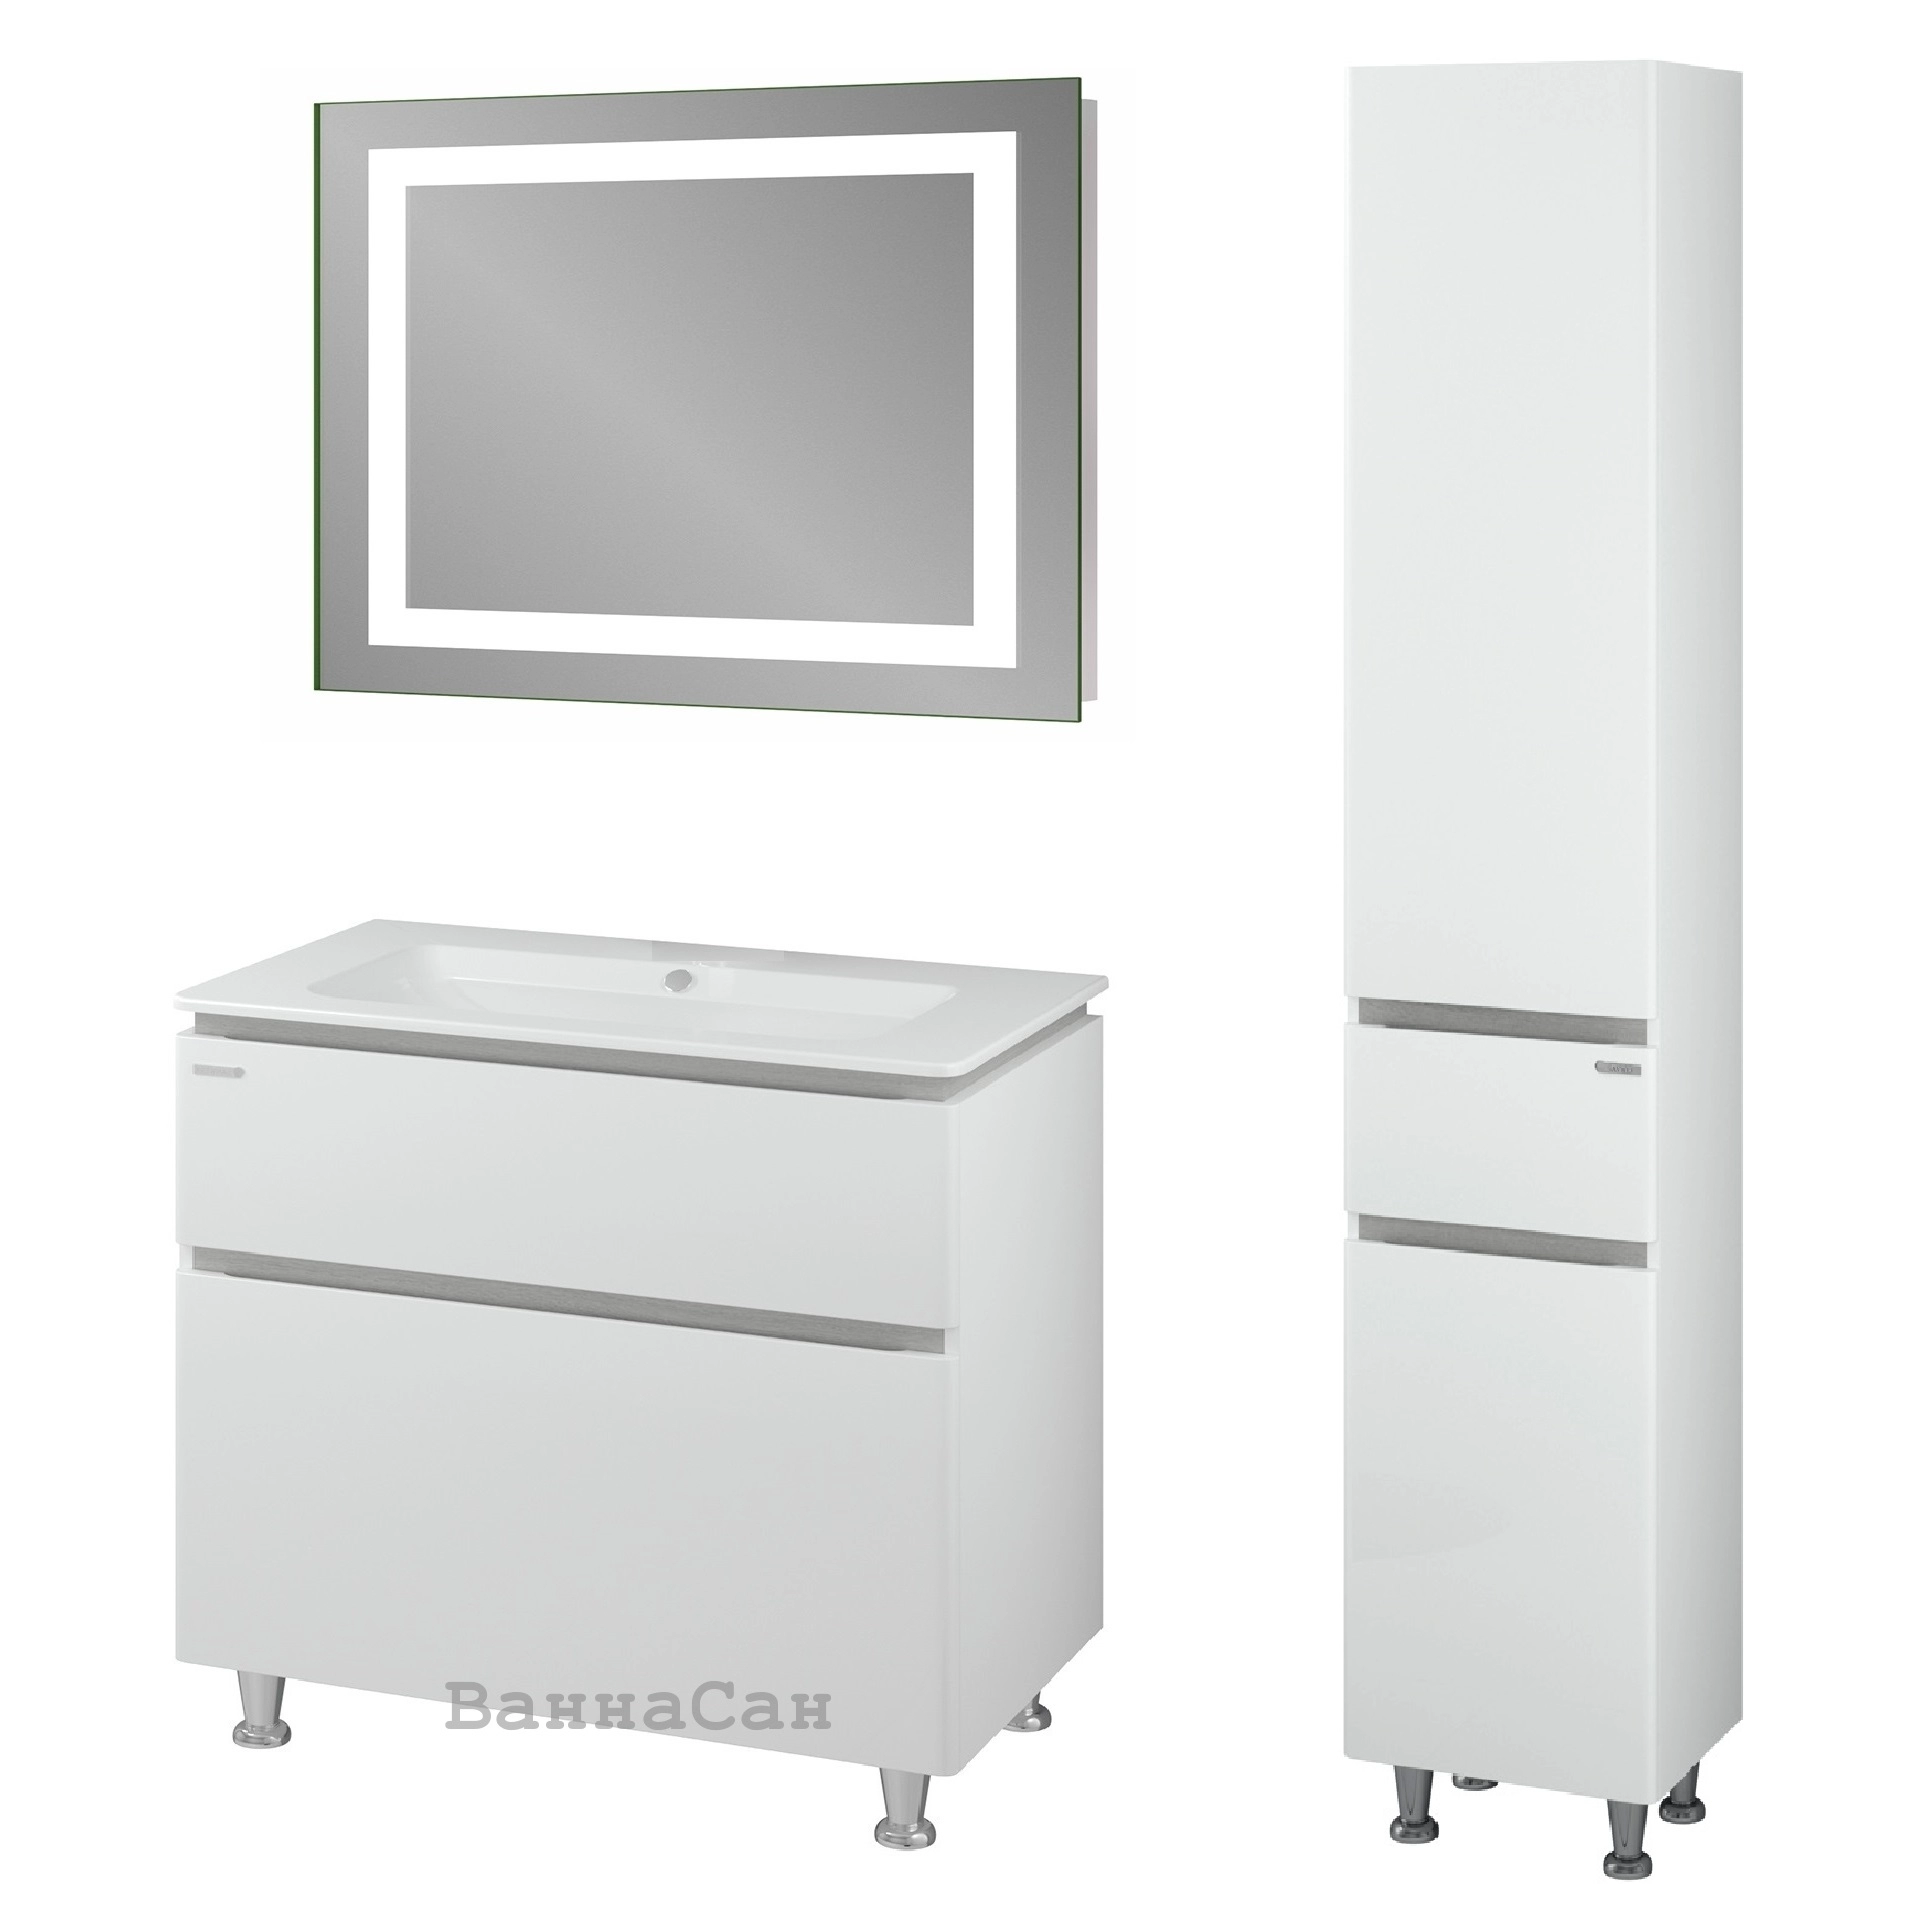 Основное премиум гарнитур мебели для ванной 80 см санверк амата 25569-25550-25573 №1